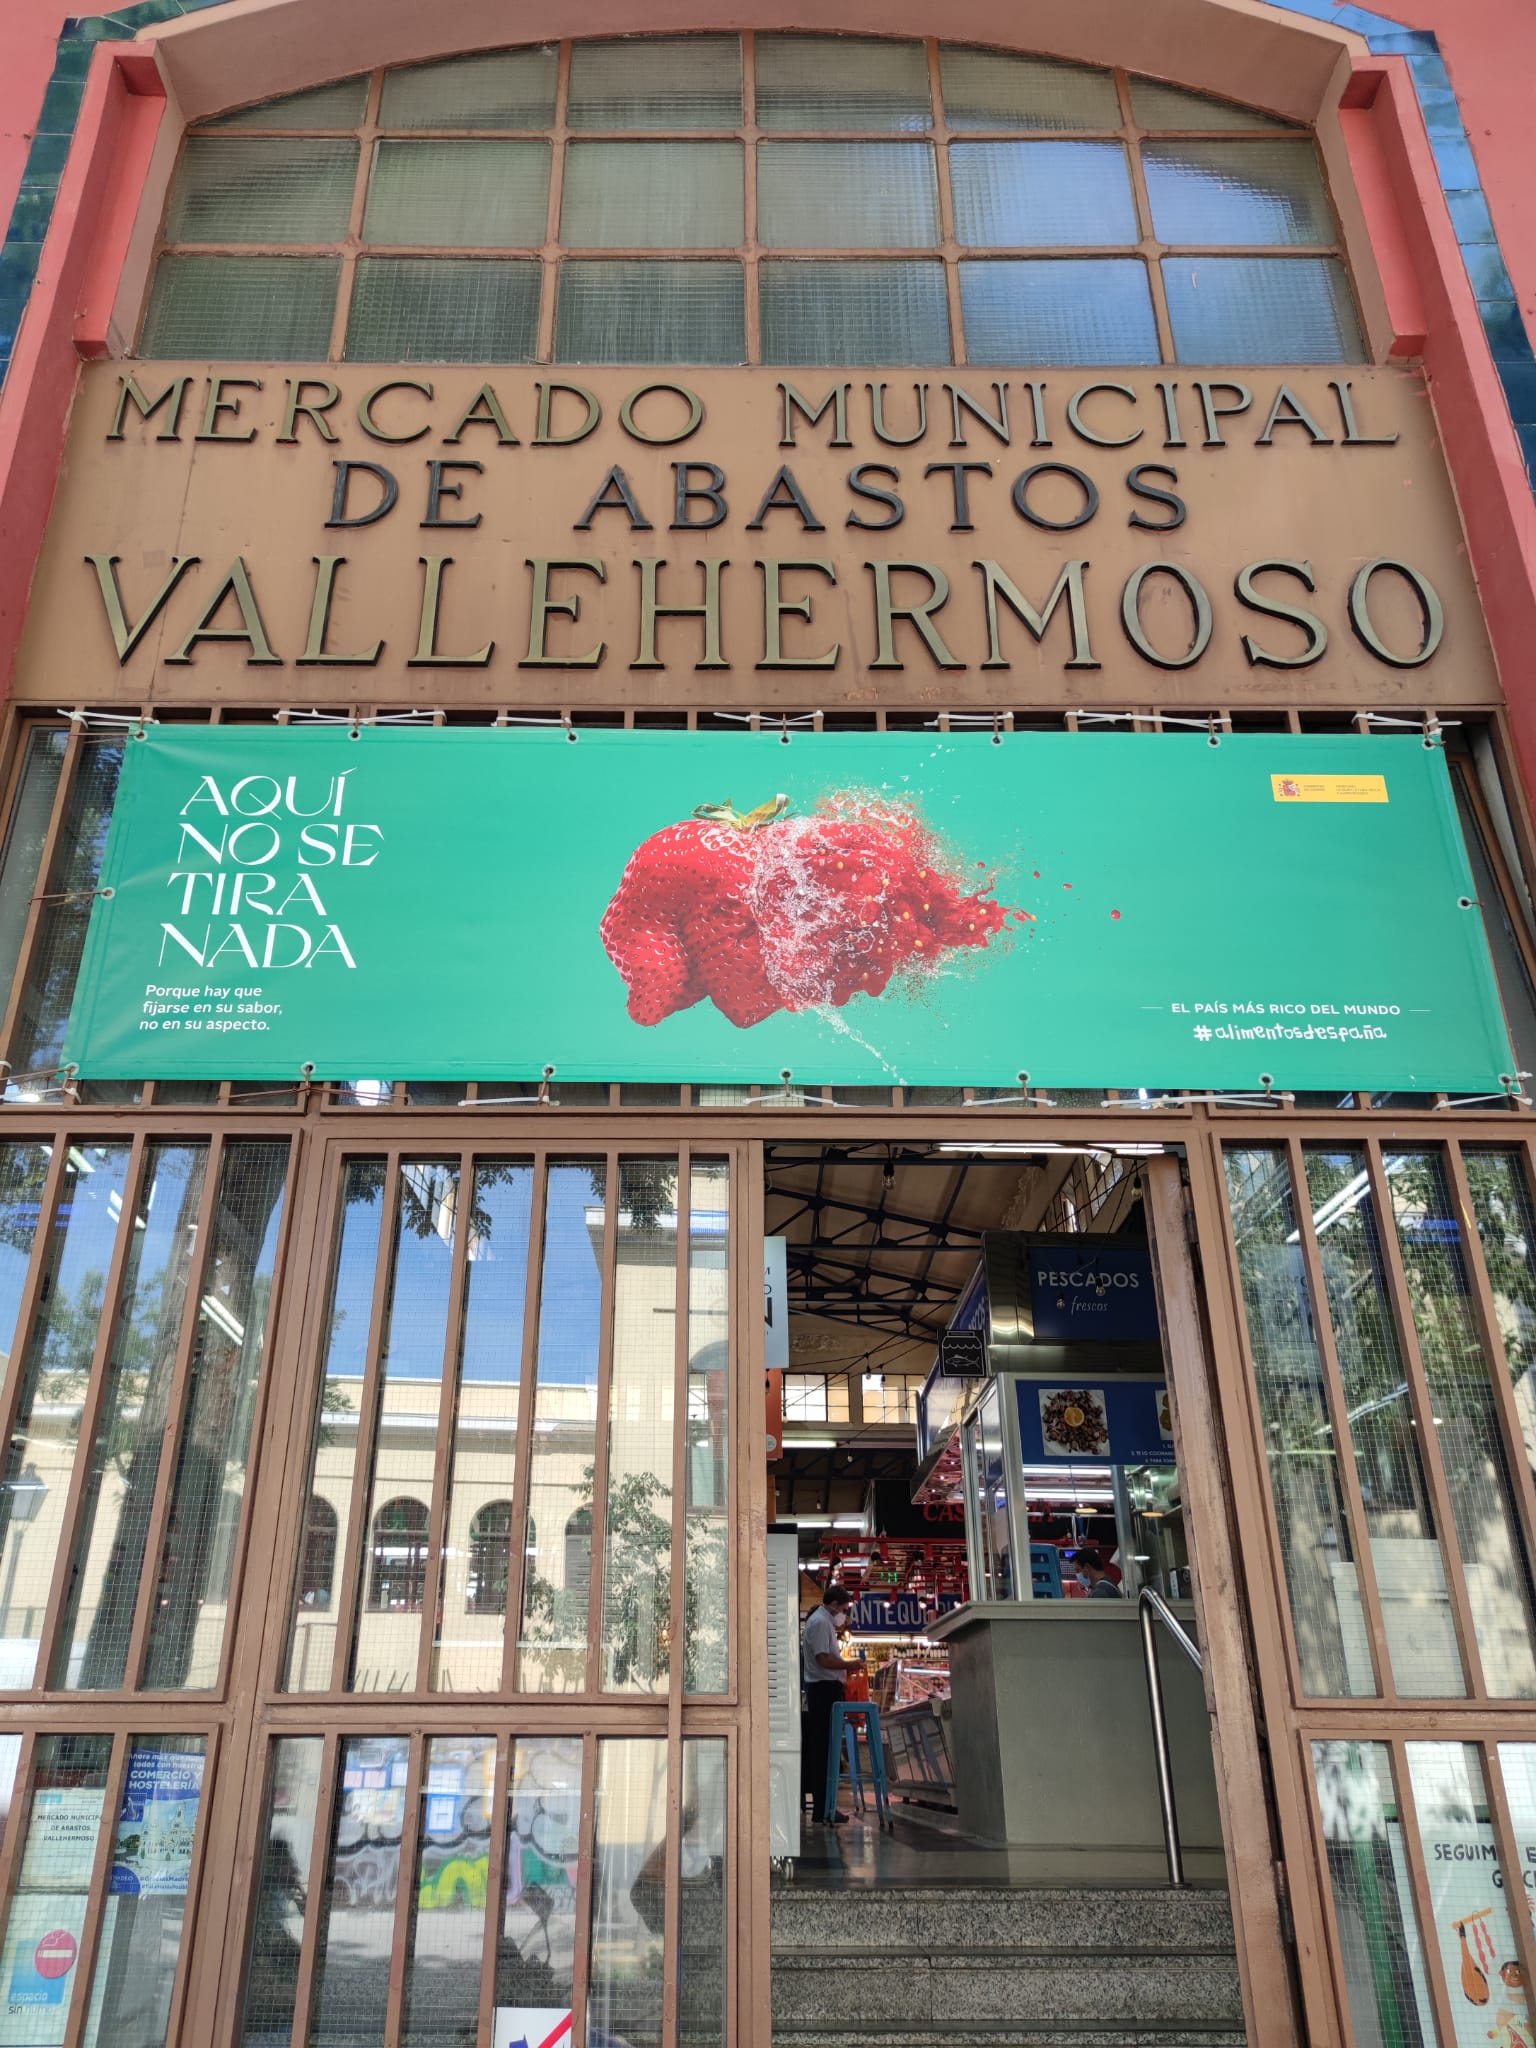 Imagen Mercado Vallehermoso_1